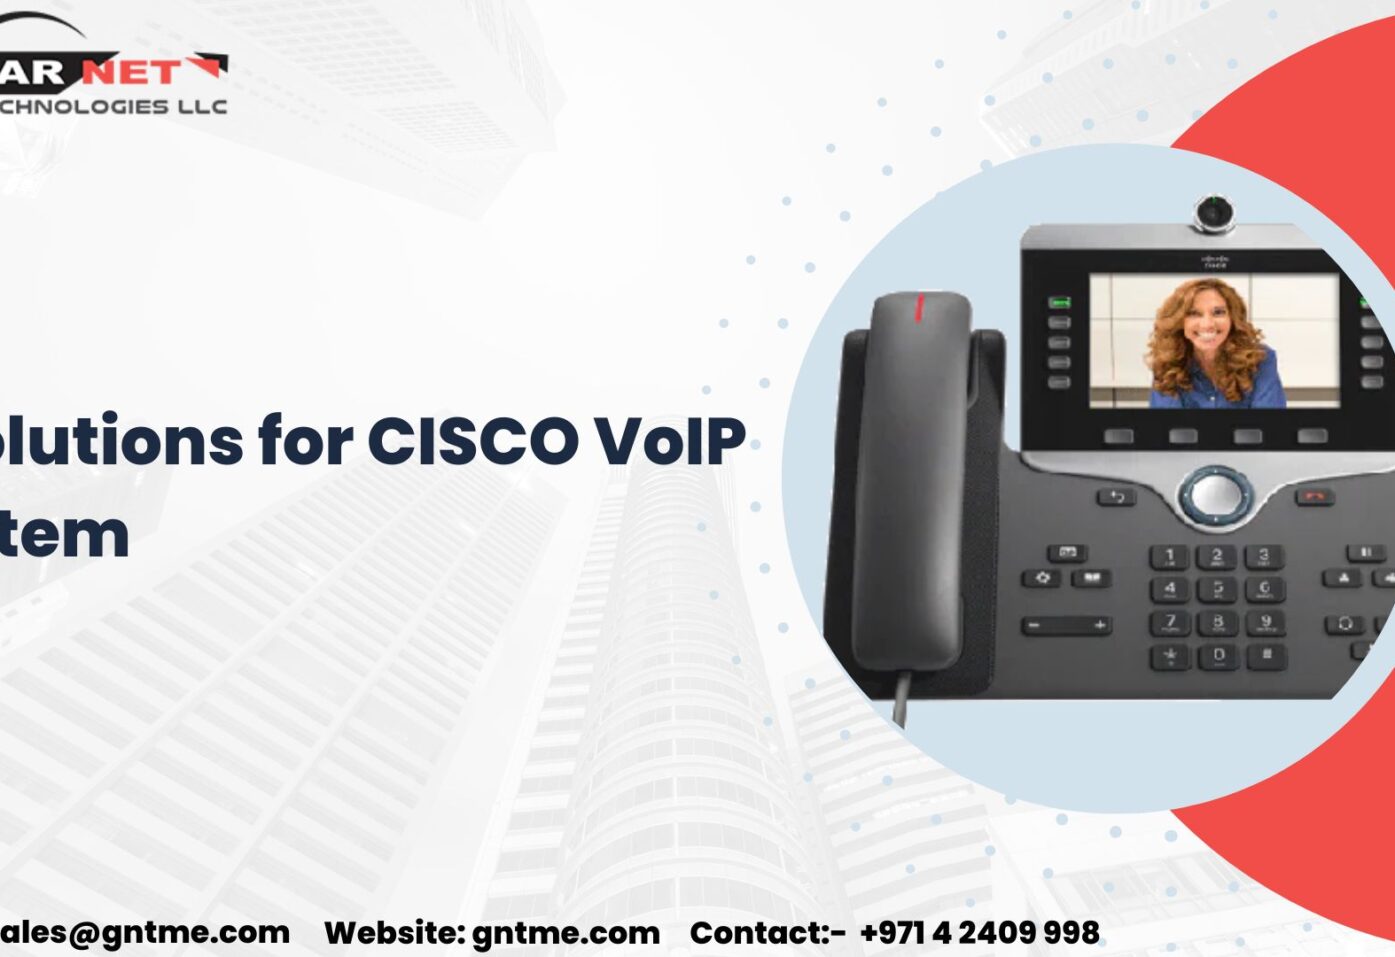 CISCO VoIP System